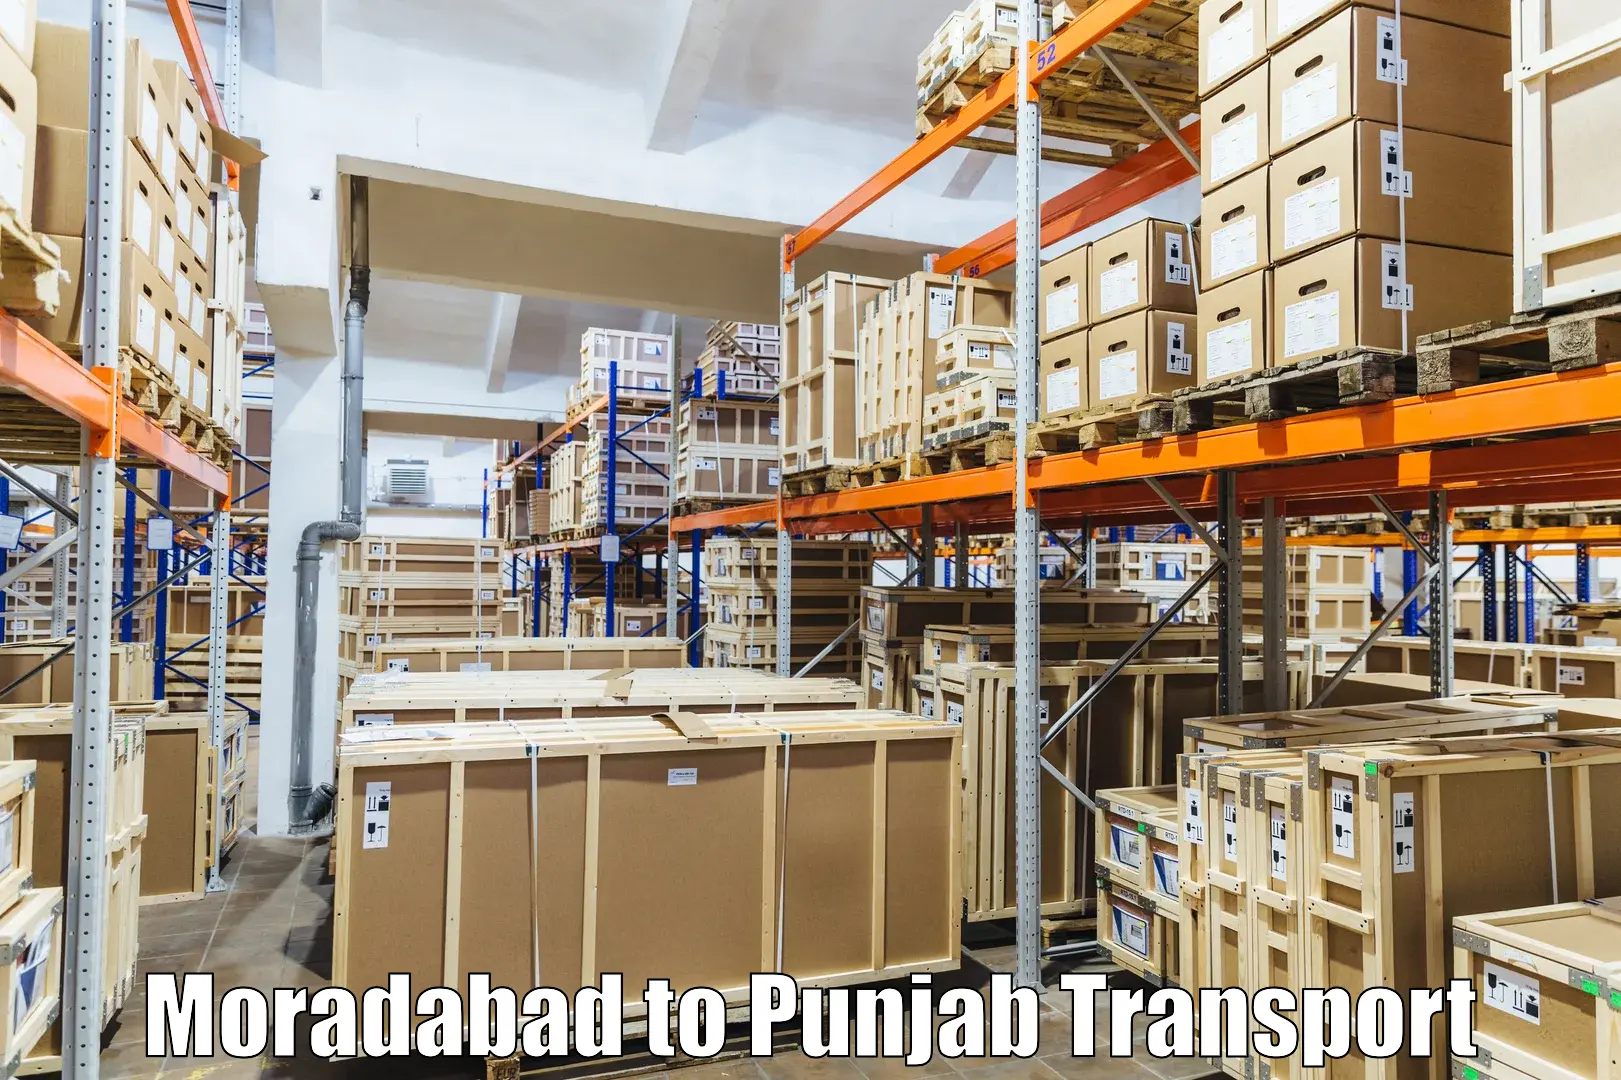 Transport shared services Moradabad to Jalandhar